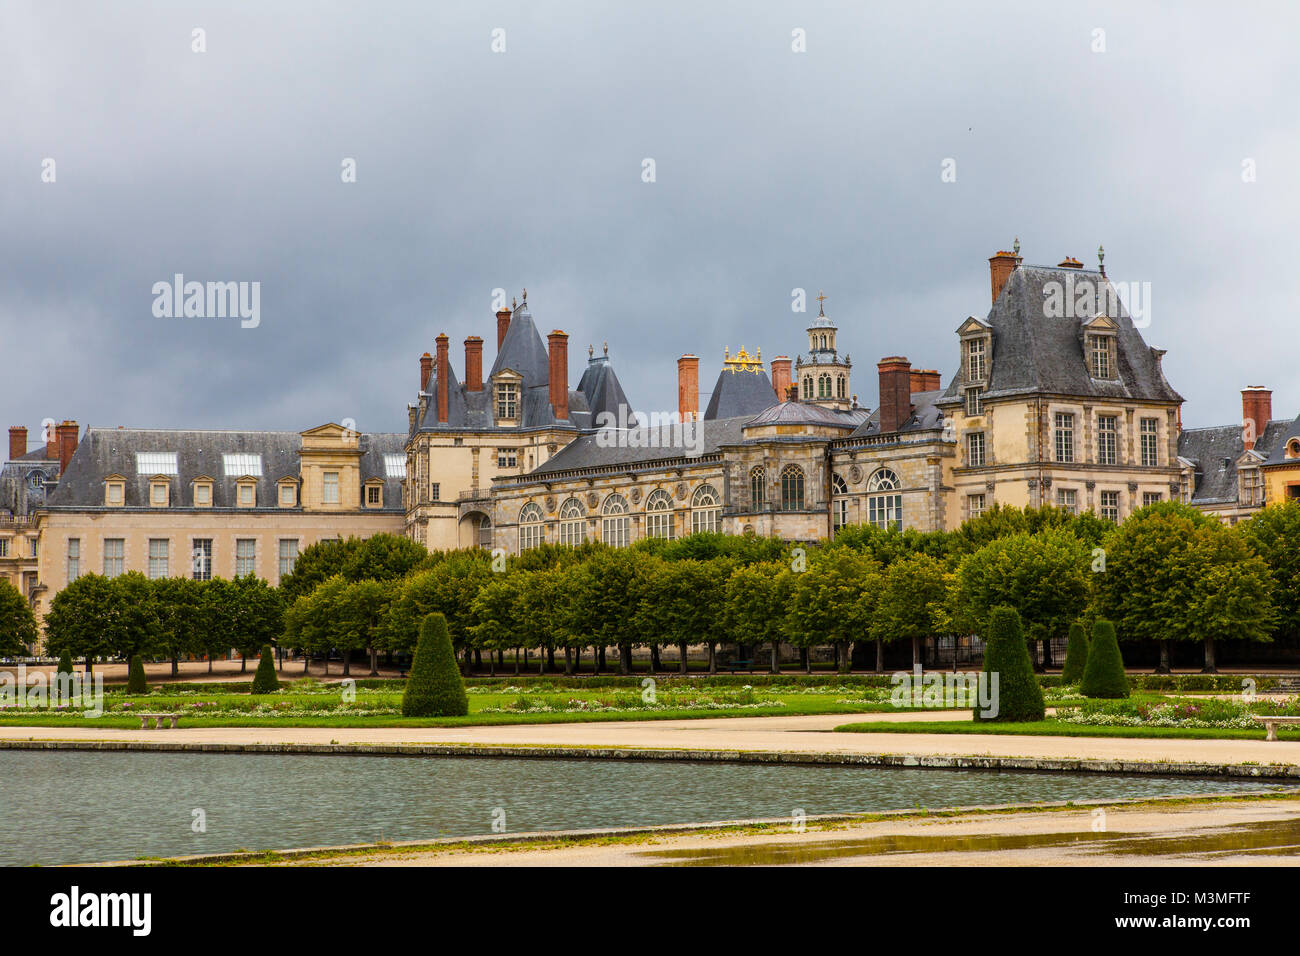 Royal castello di caccia, Fontainbleau. Palazzo di Fontainebleau - uno dei più grandi castelli in Francia (55 km da Parigi), il Sito Patrimonio Mondiale dell'UNESCO. Foto Stock